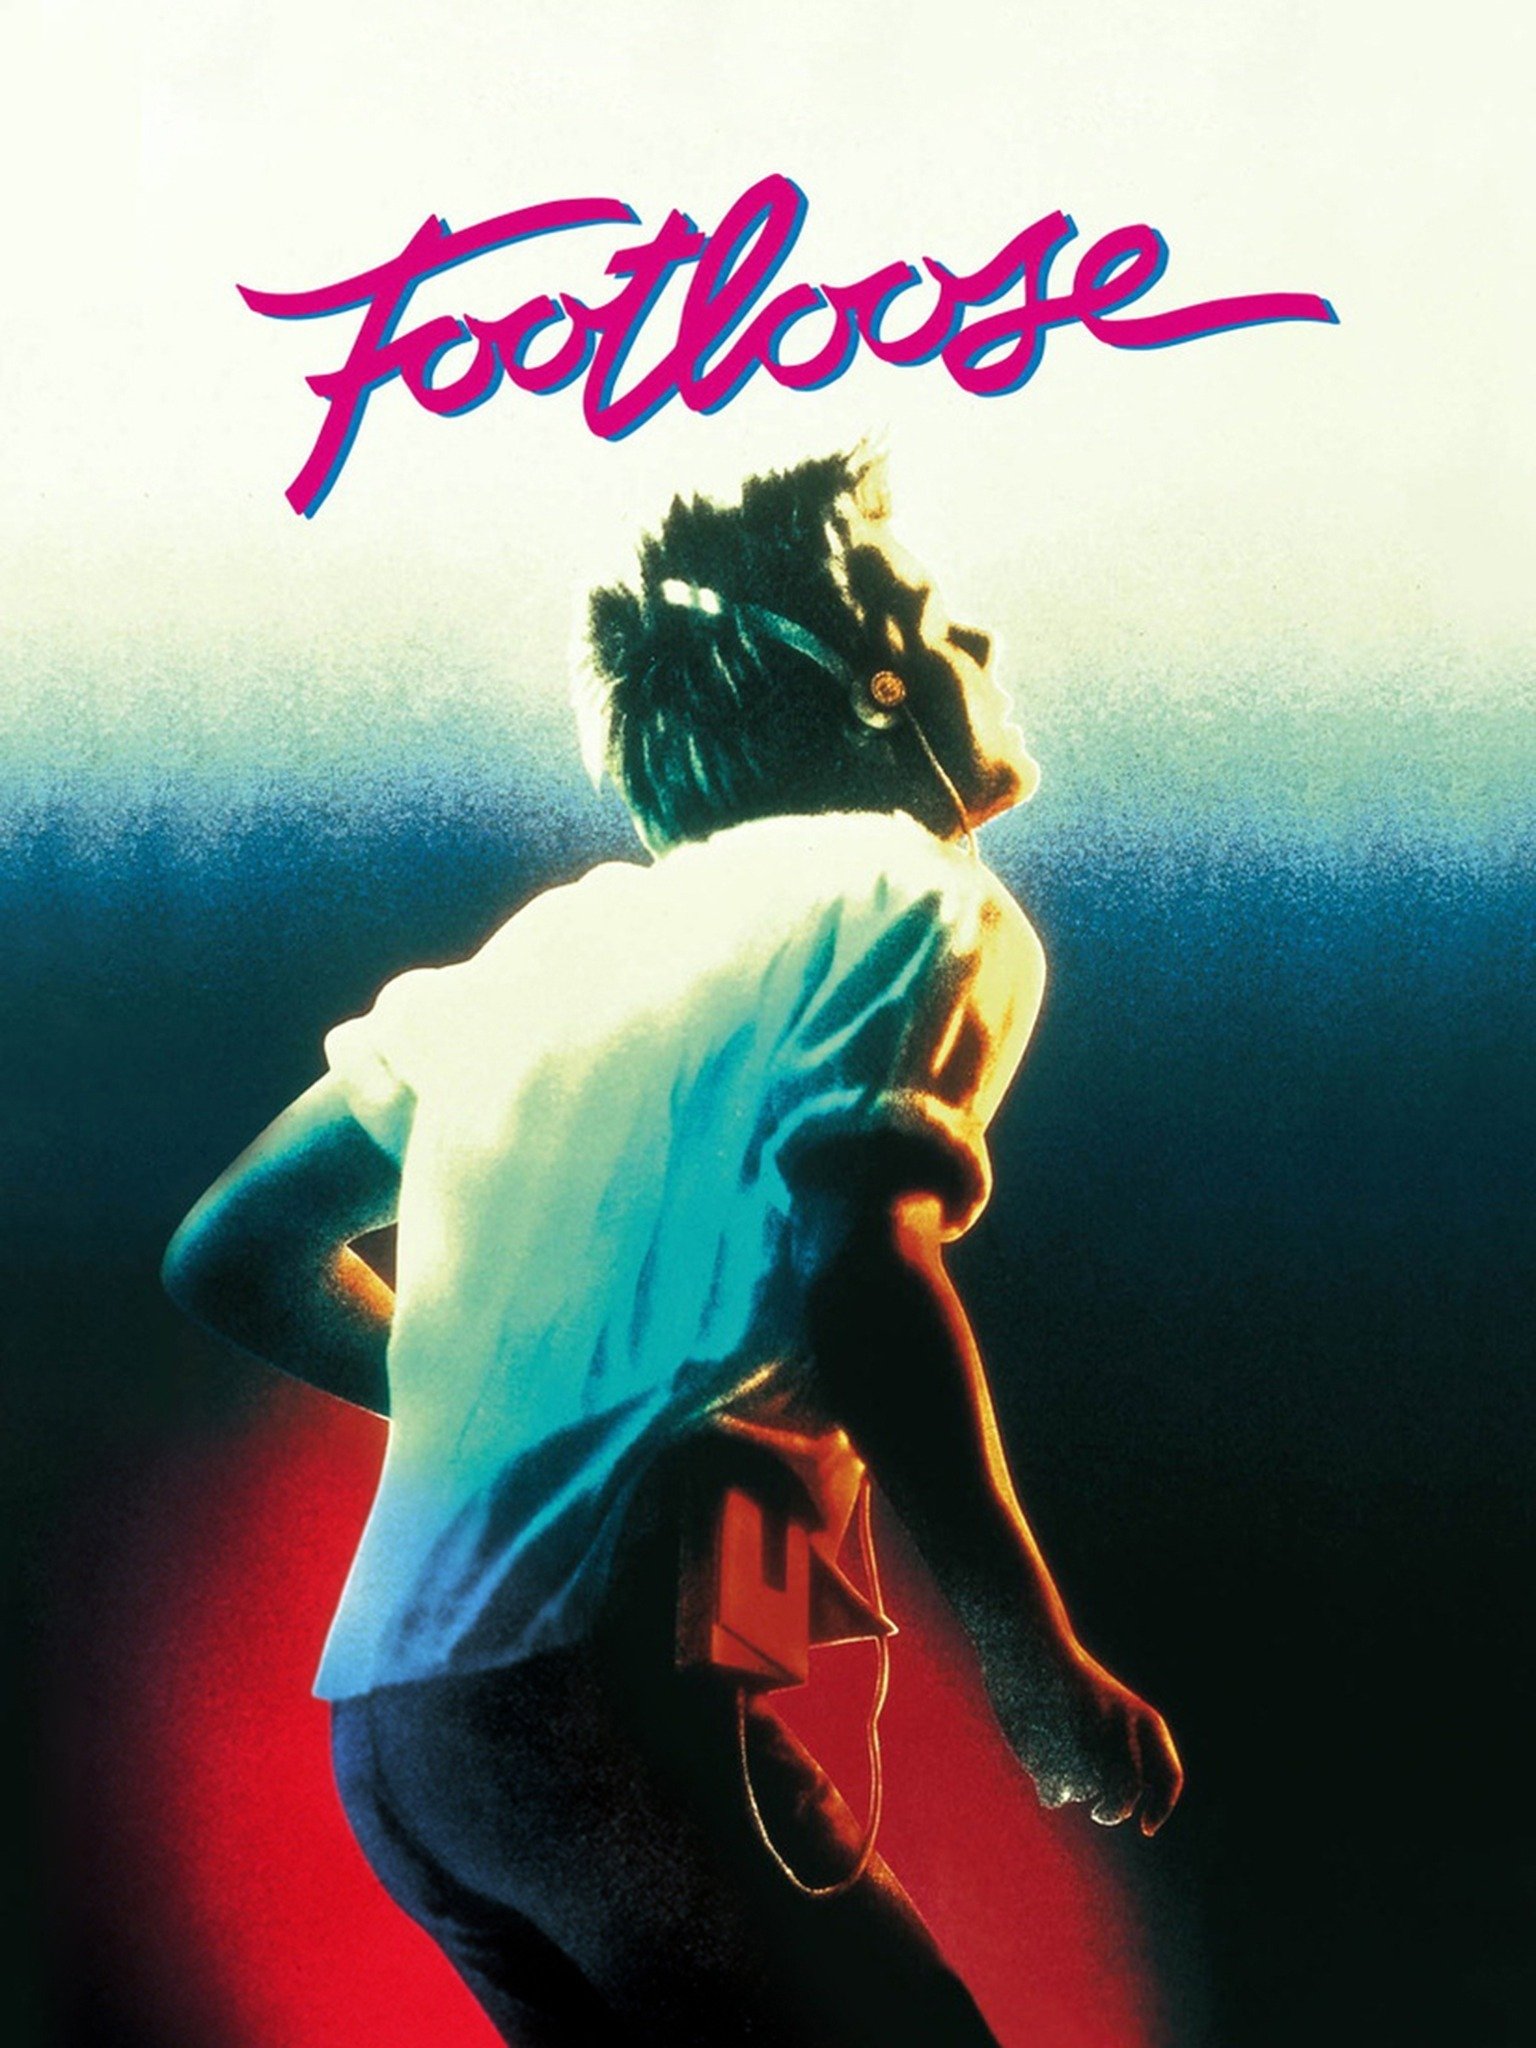 Footloose - Movie Reviews